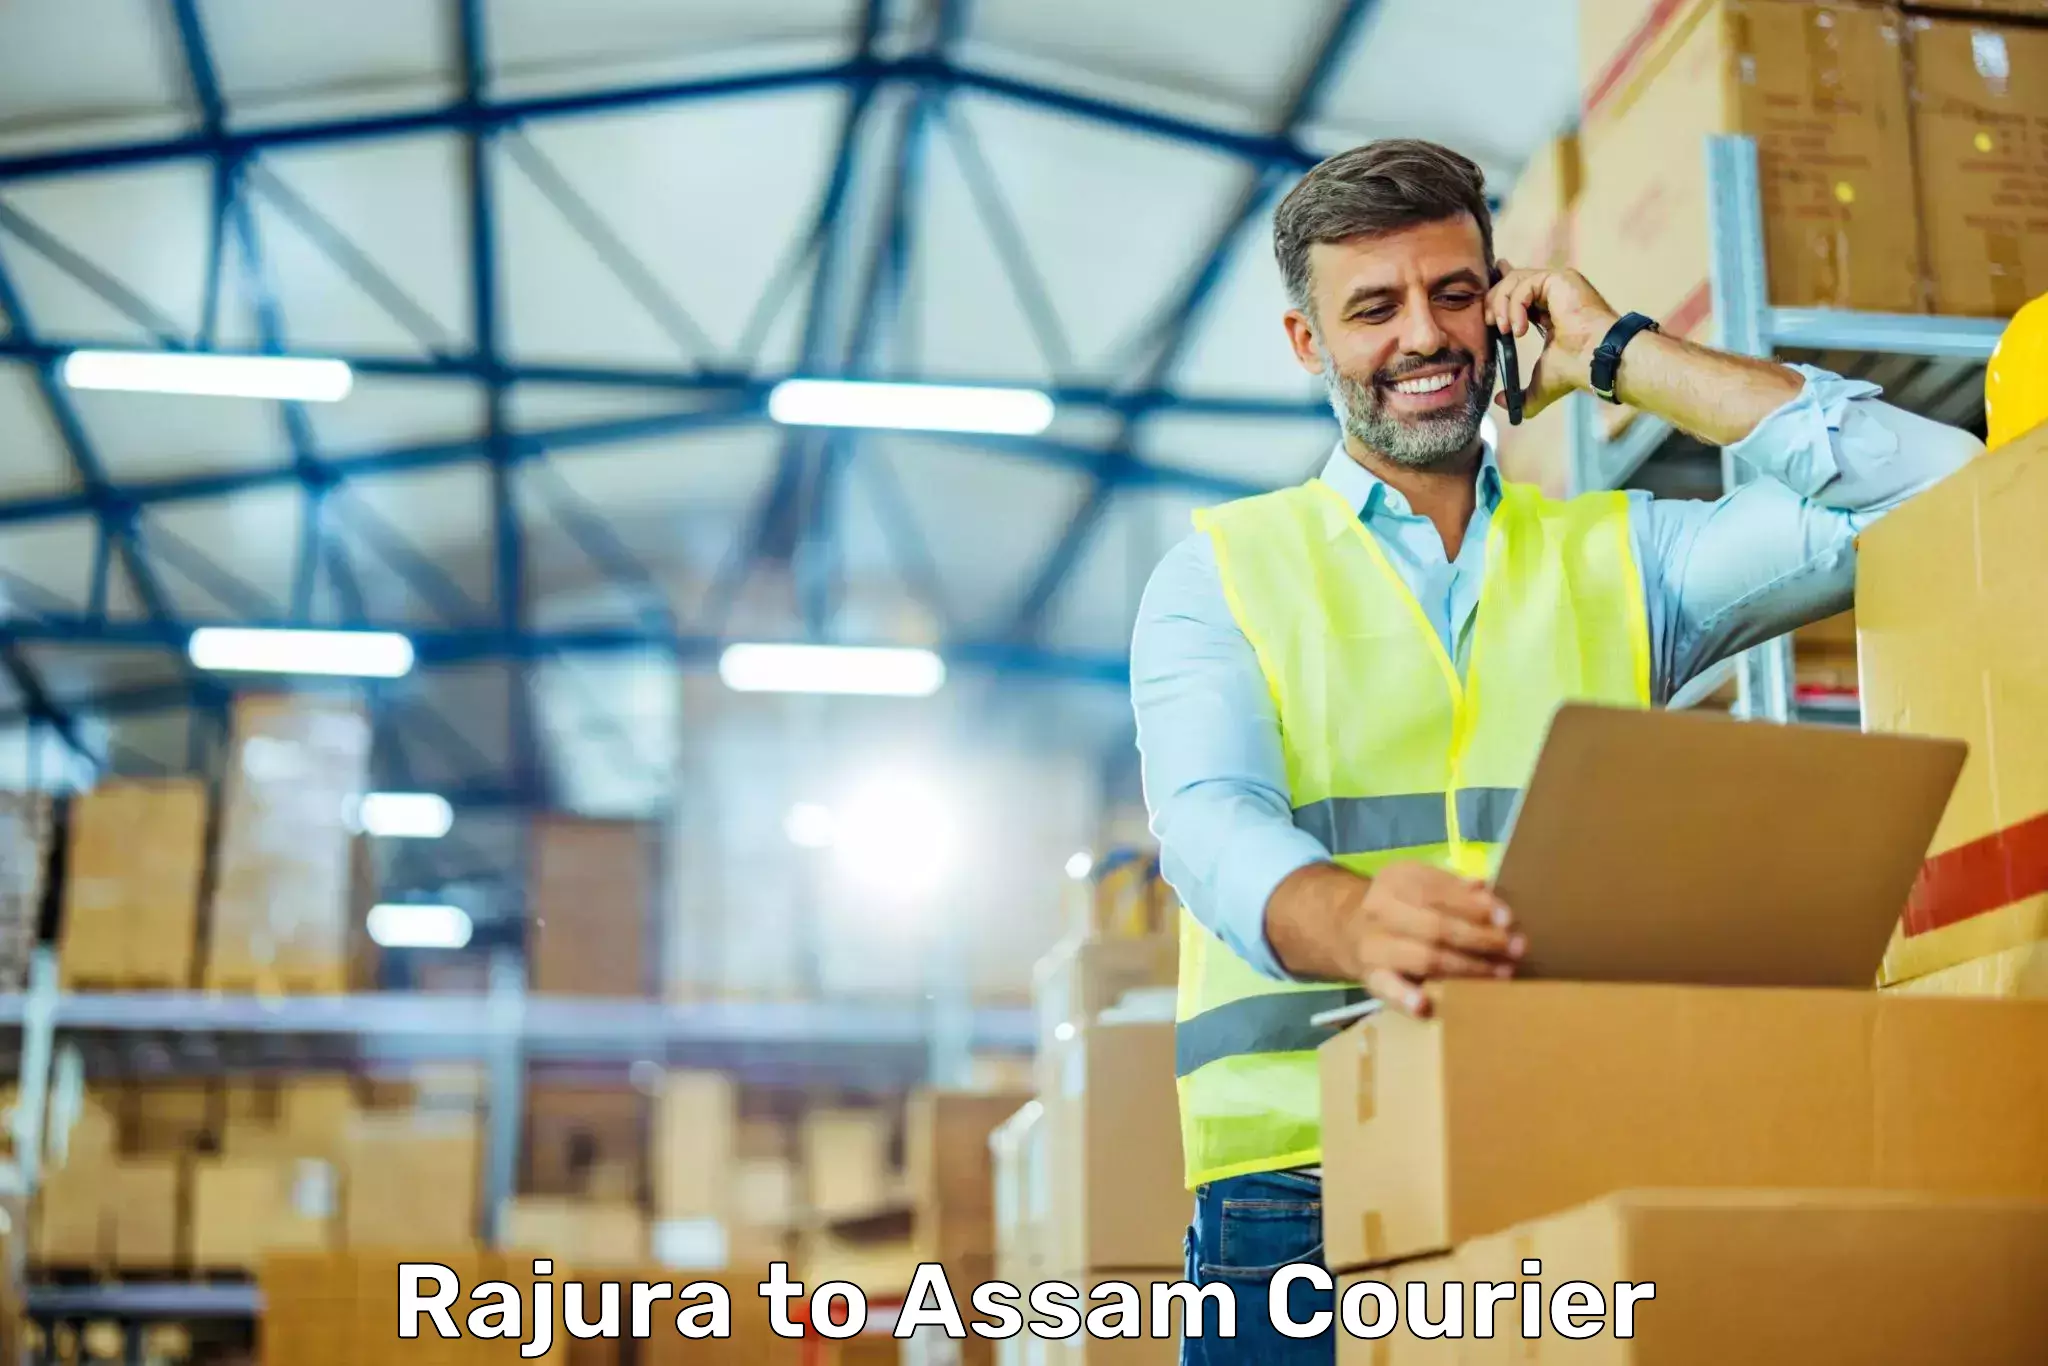 Urgent courier needs Rajura to Kampur